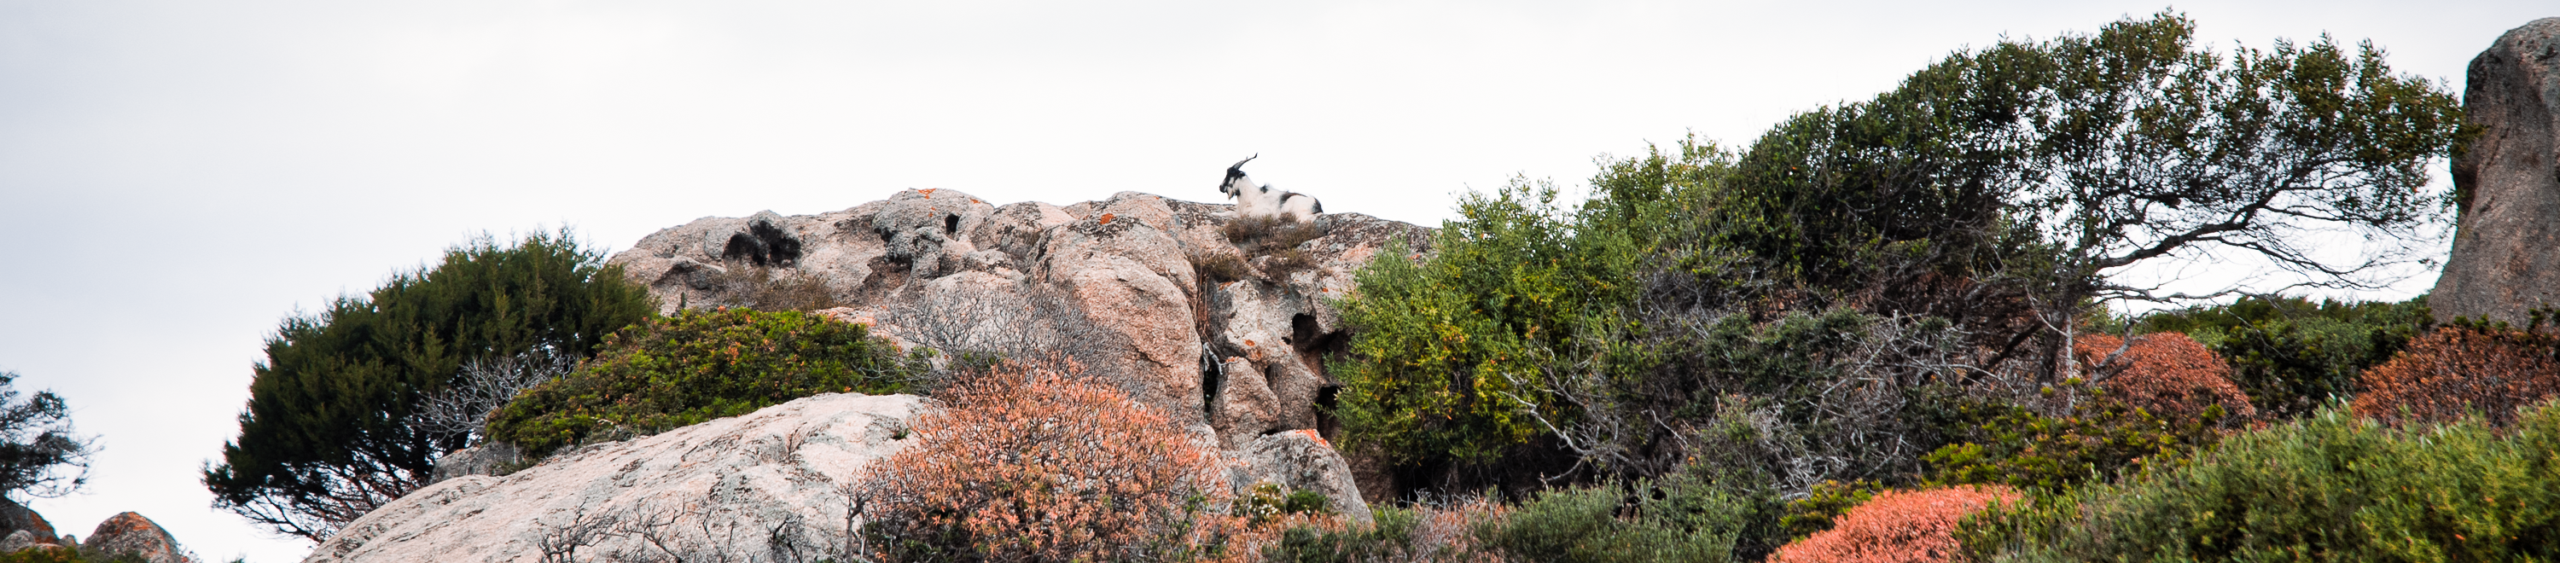 Una capra selvatica accovacciata all'Asinara